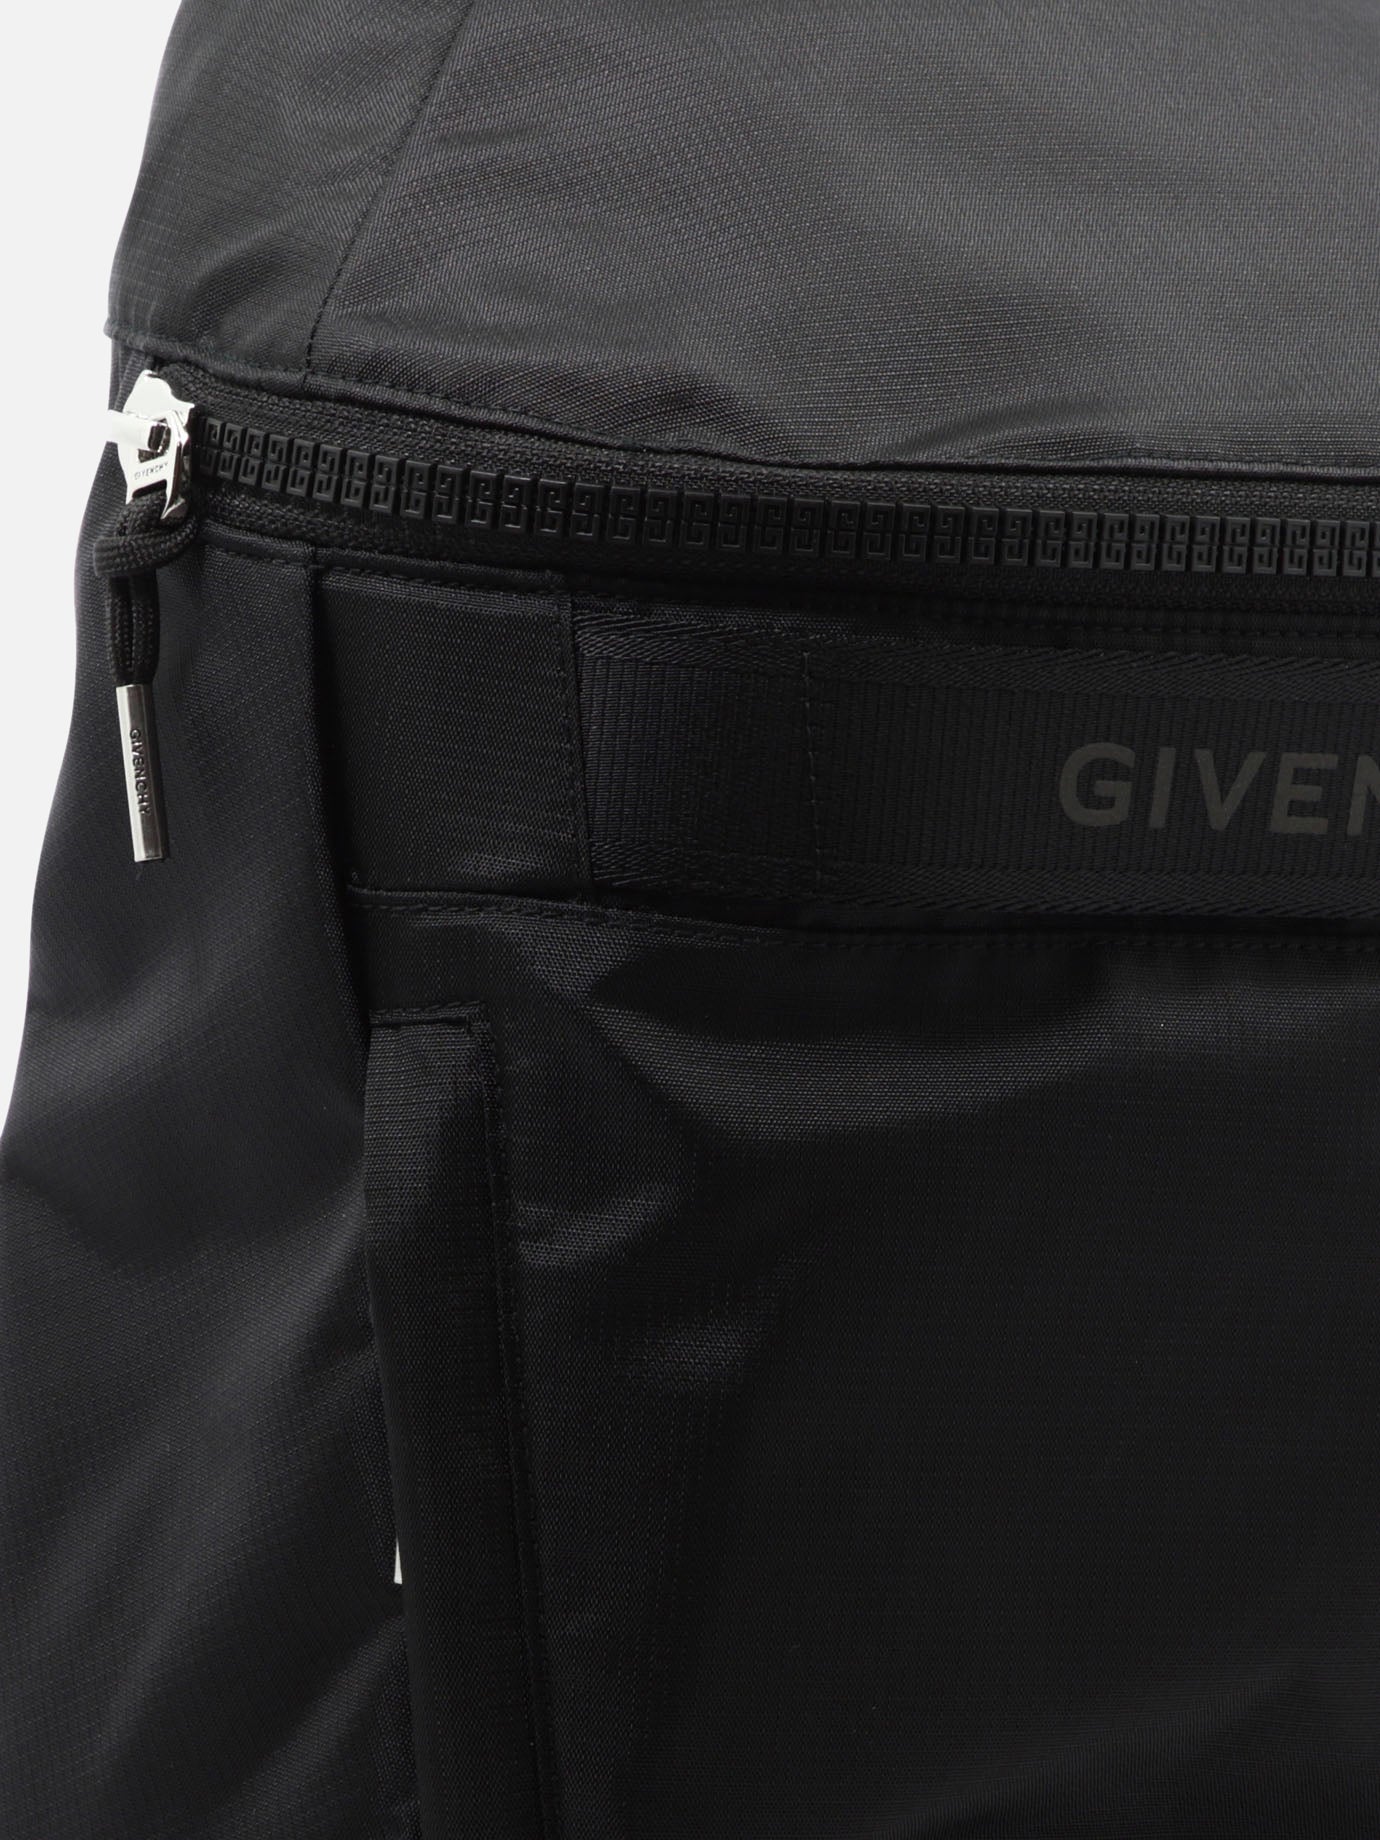 "G-Trek" backpack